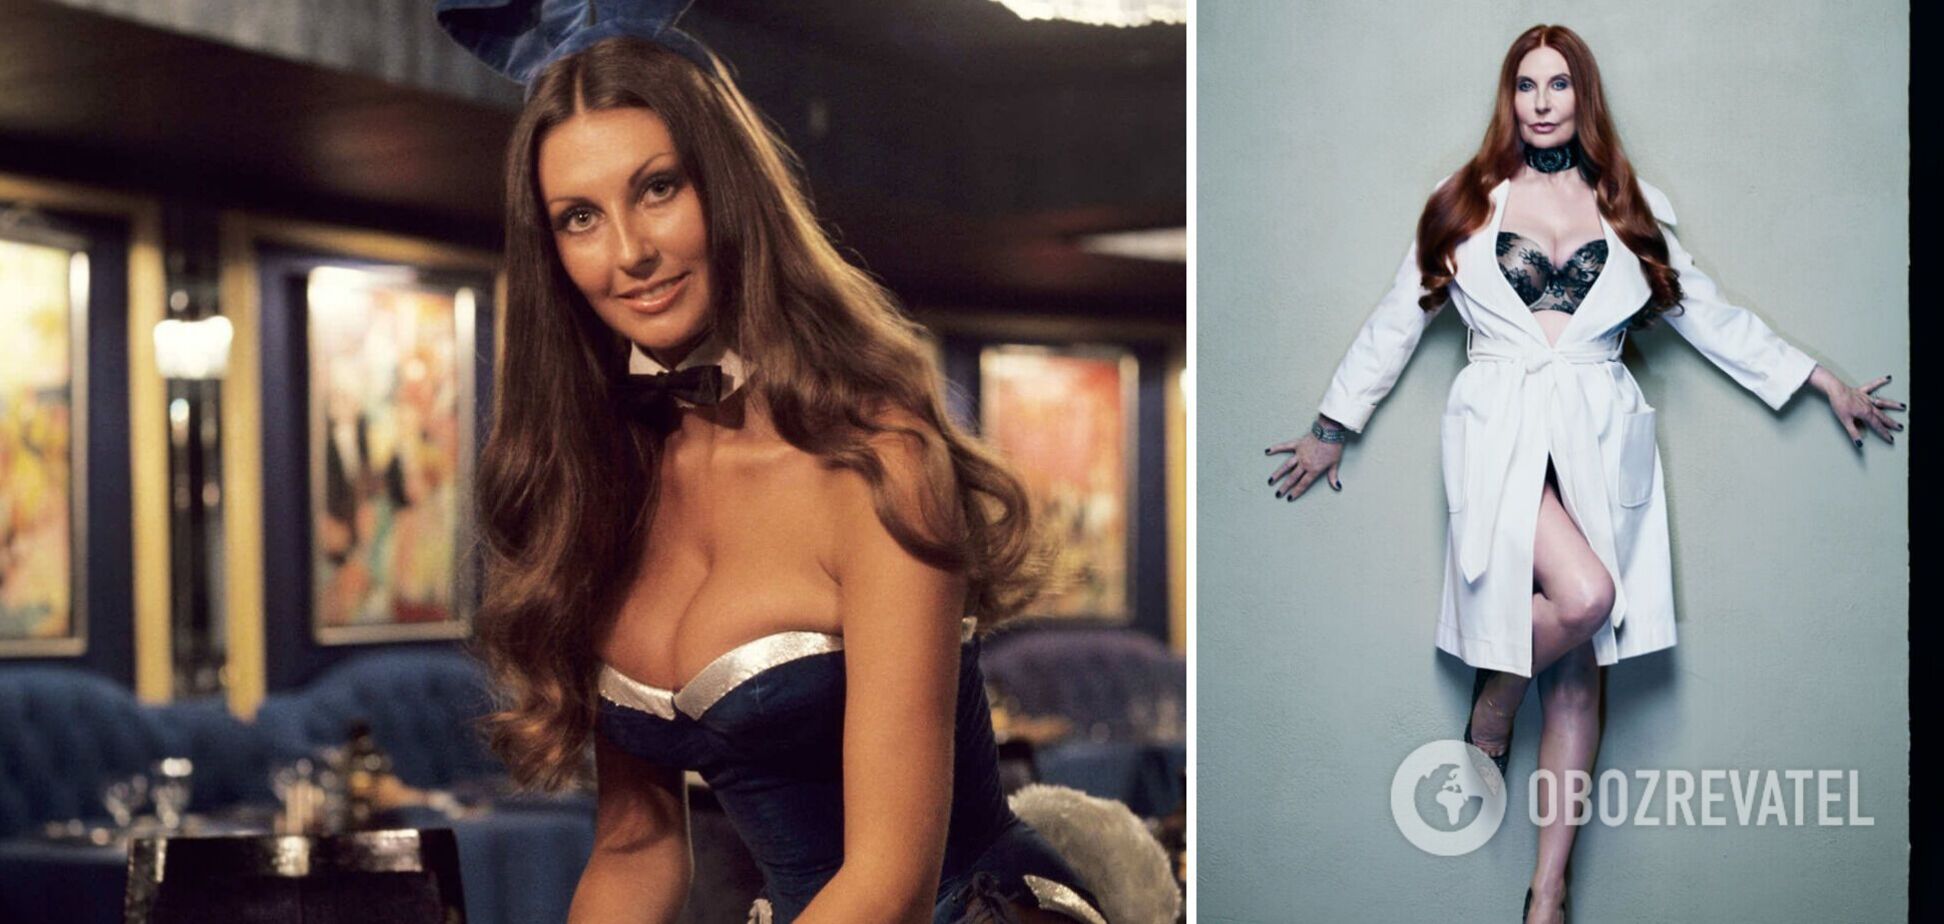 Как выглядела и сколько зарабатывала первая модель Playboy, которой сейчас 72 года. Фото